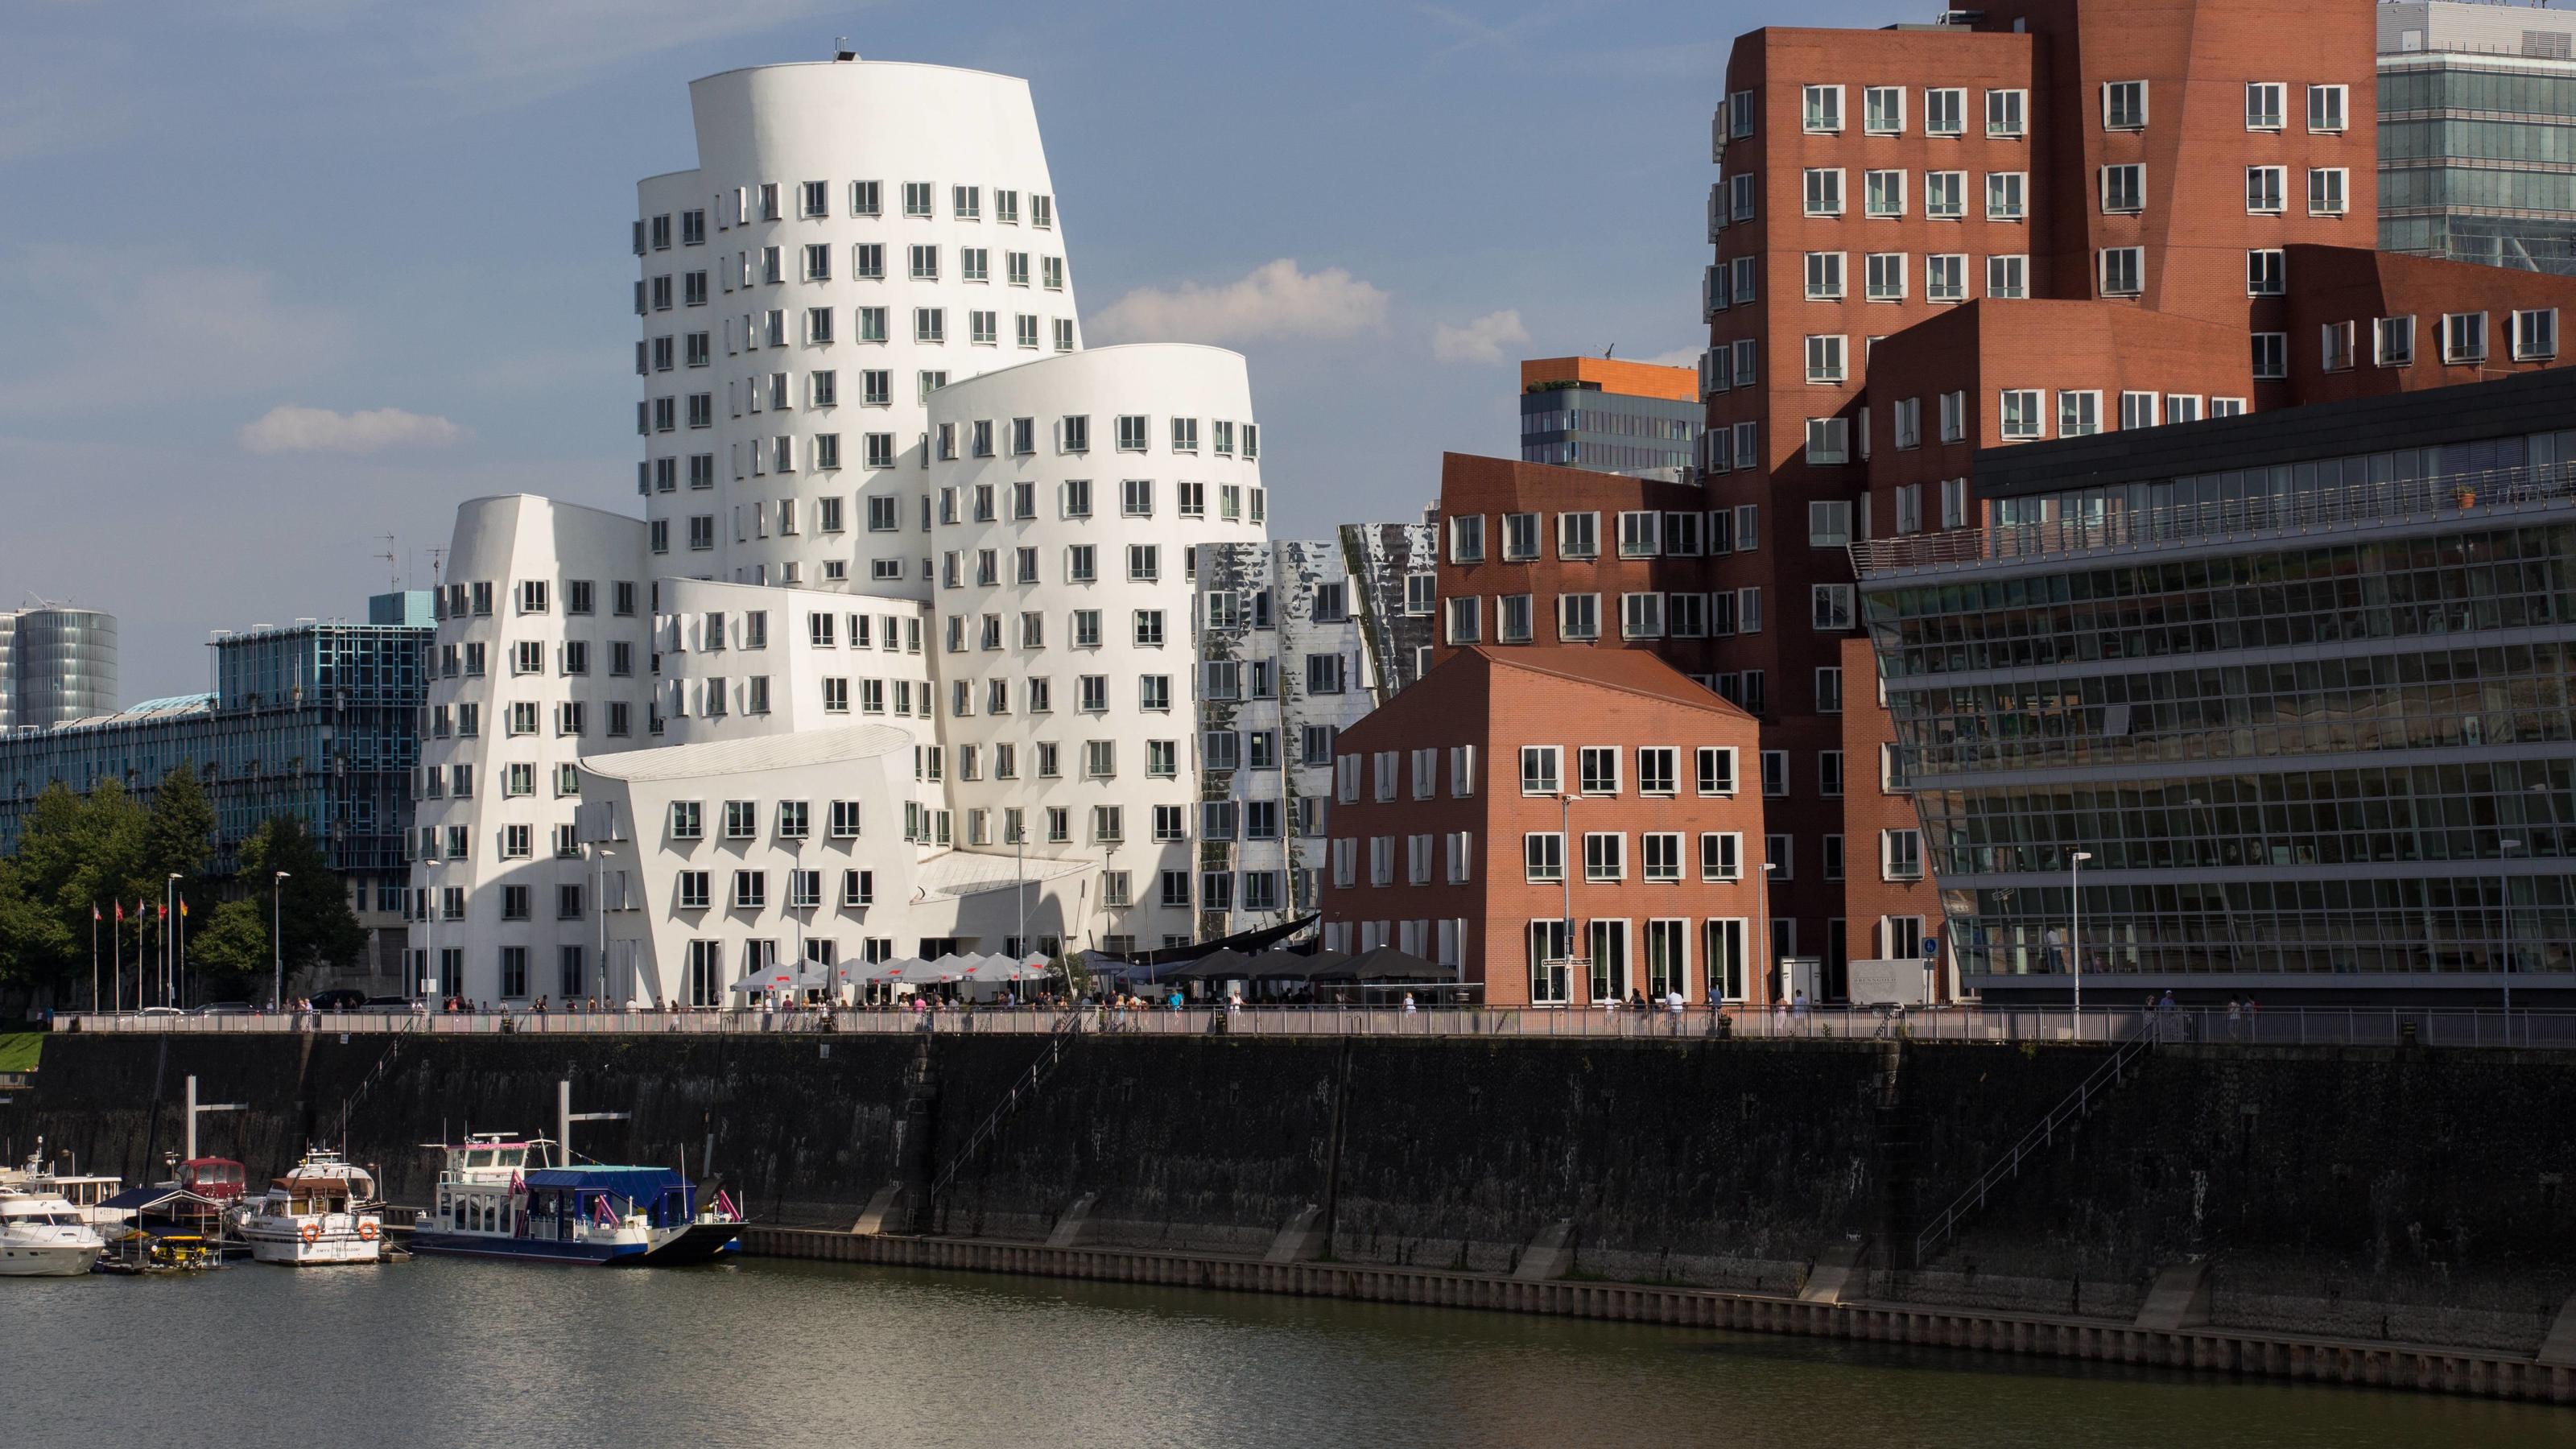 Ausflugtipp ür gutes Wetter: Medienhafen in Düsseldorf